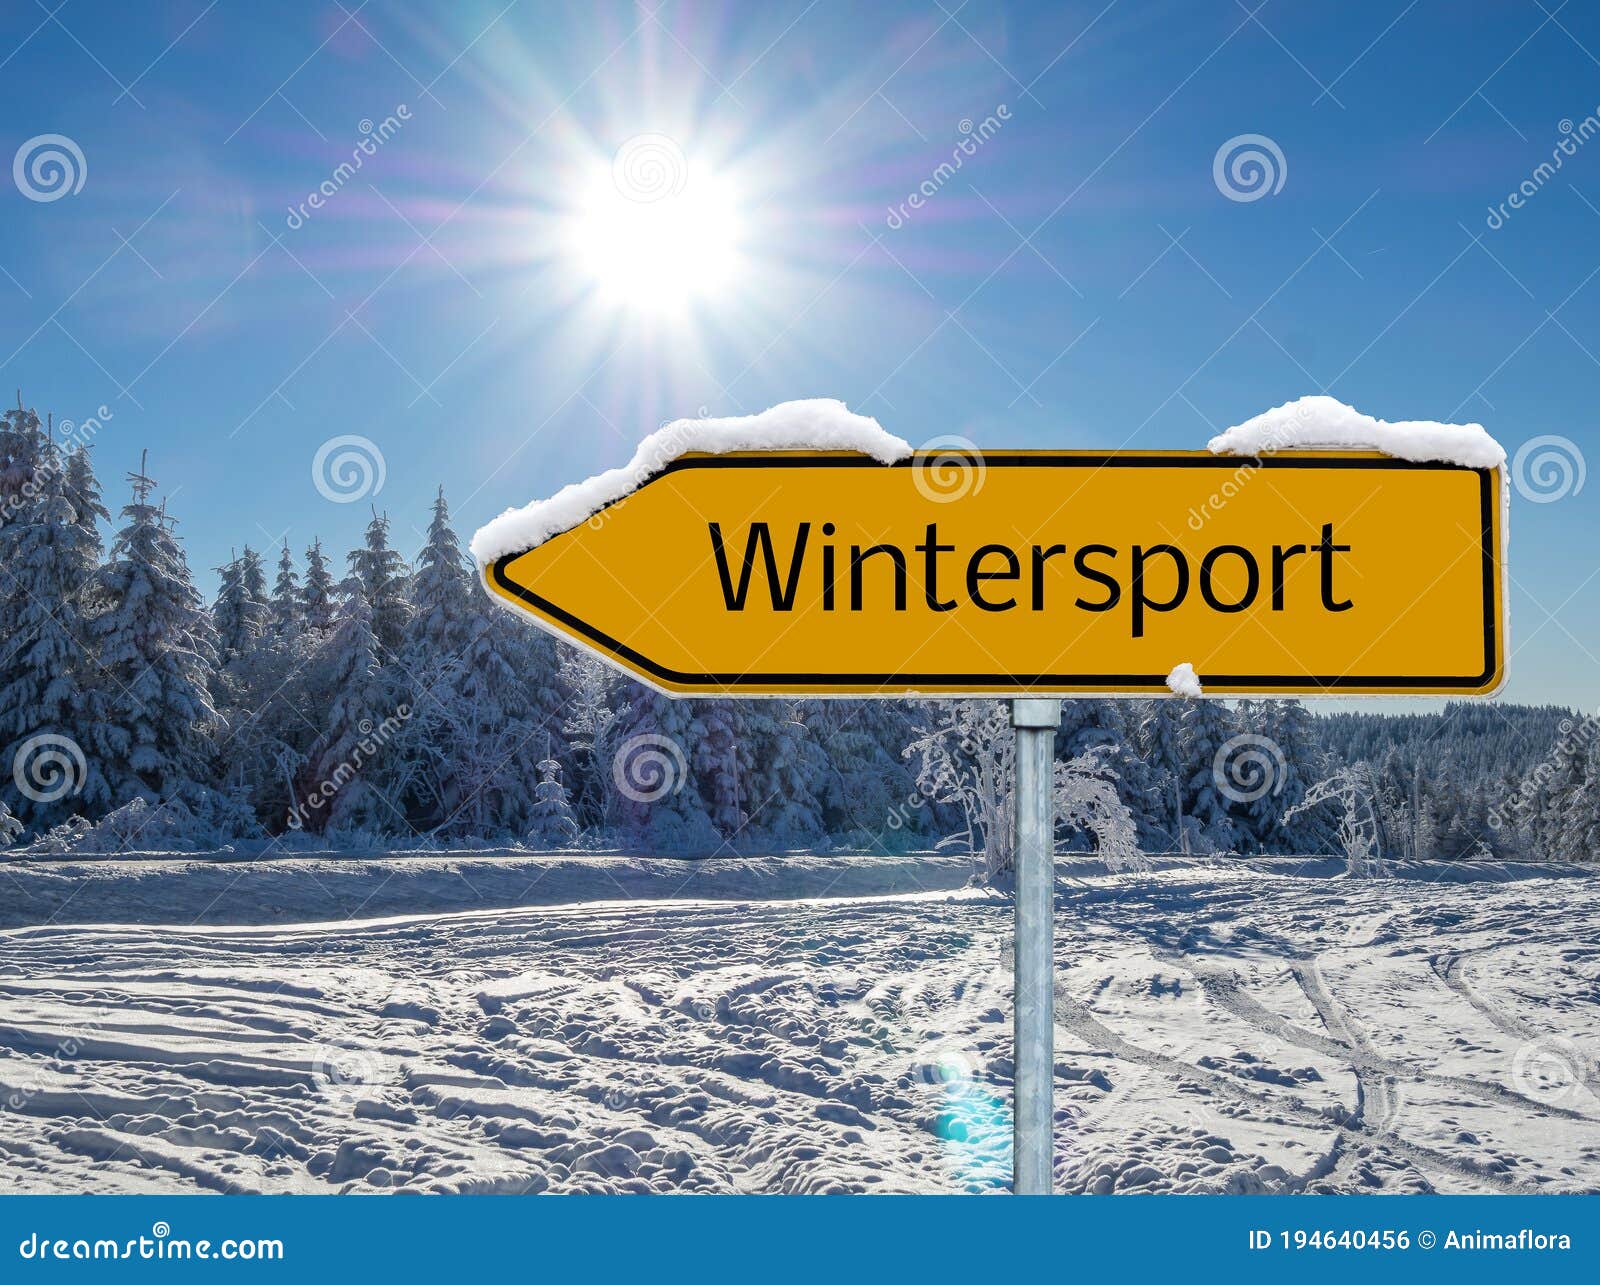 german wintersport area shield arrow